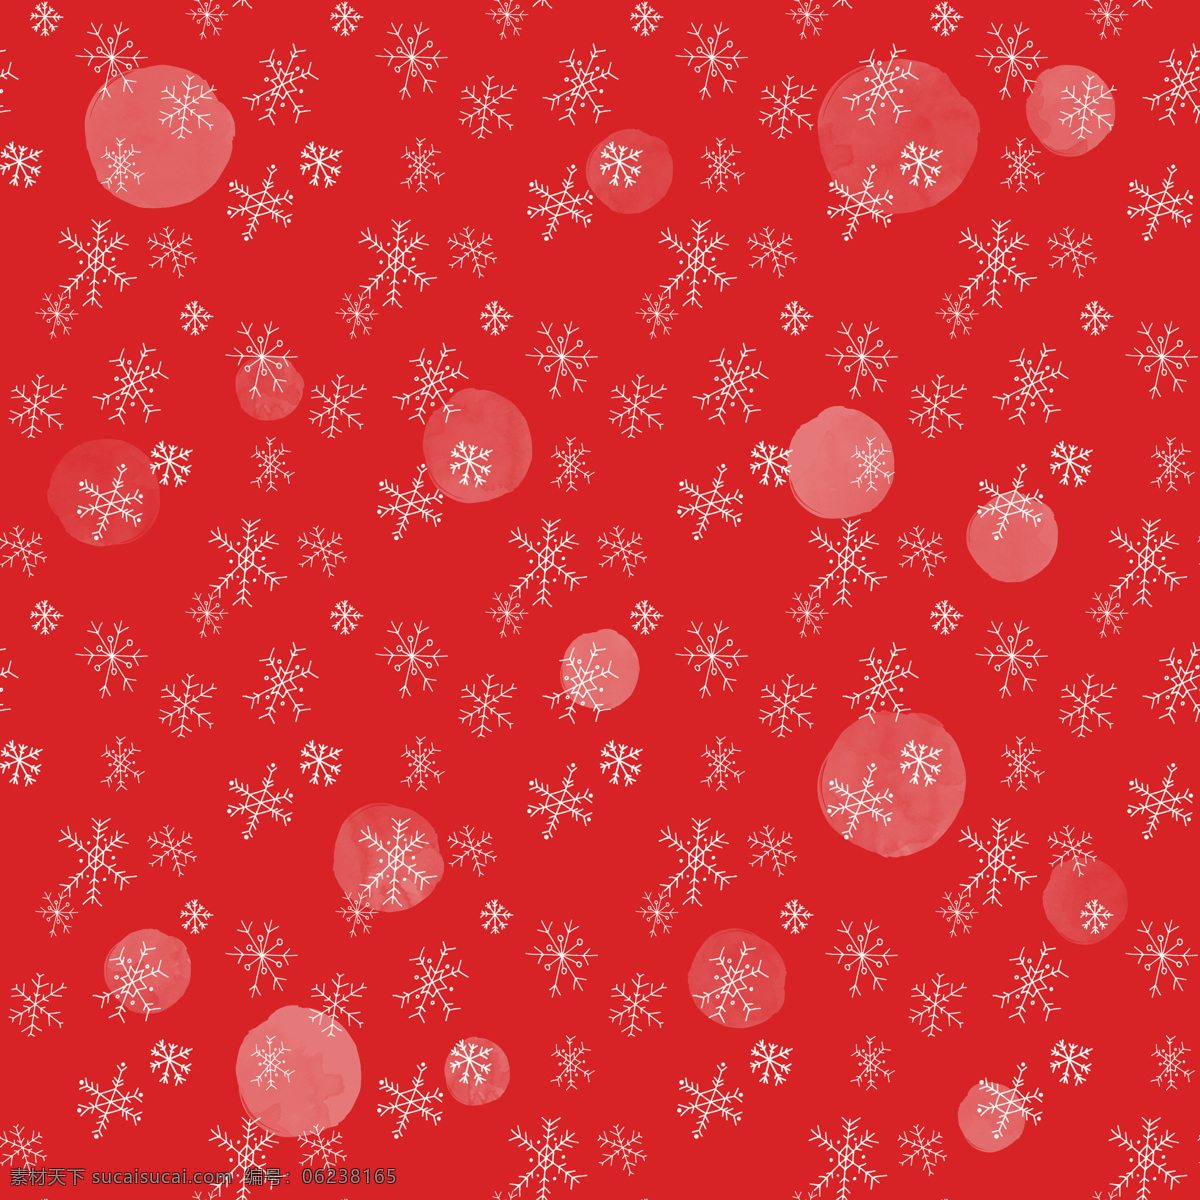 红色 底 白 雪花 背景 铃铛 礼物 圣诞鹿 圣诞节 圣诞节背景 彩色背景 红色背景 白色背景 无缝背景 卡通背景 时尚背景 潮流背景 创意背景 抽象背景